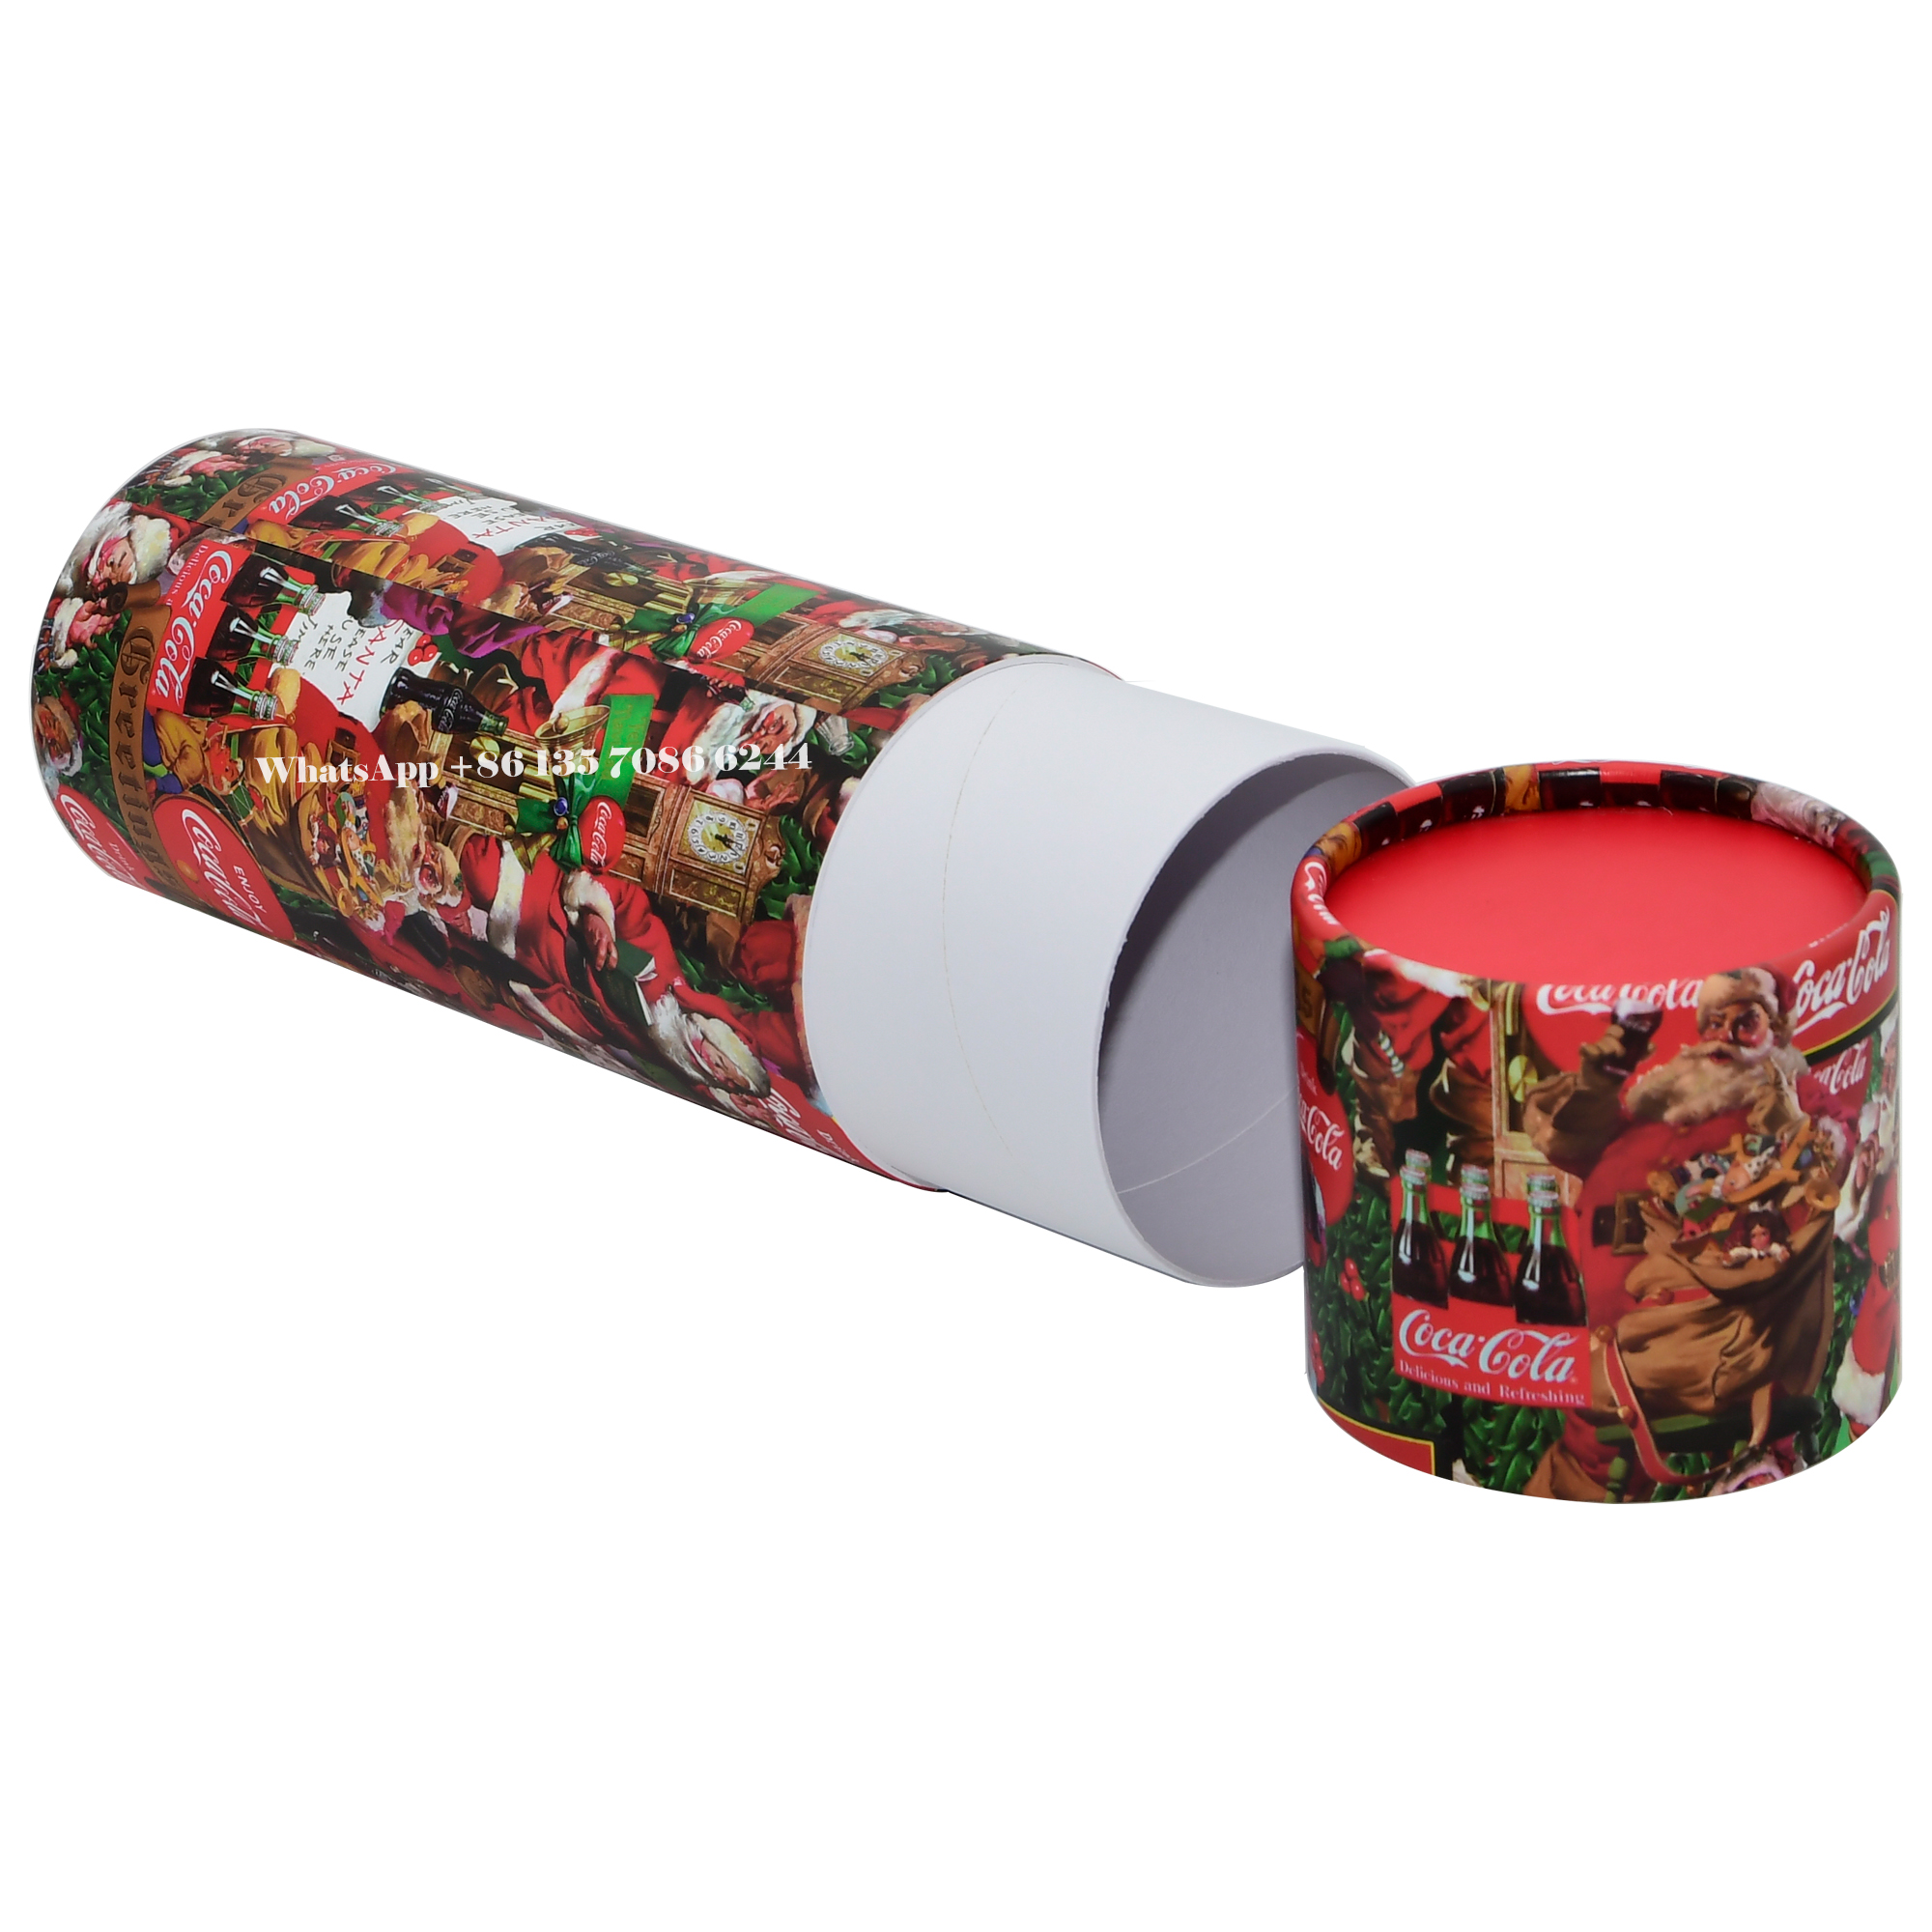 Festliche Weihnachtsedition Coca-Cola Papiertubenverpackung  